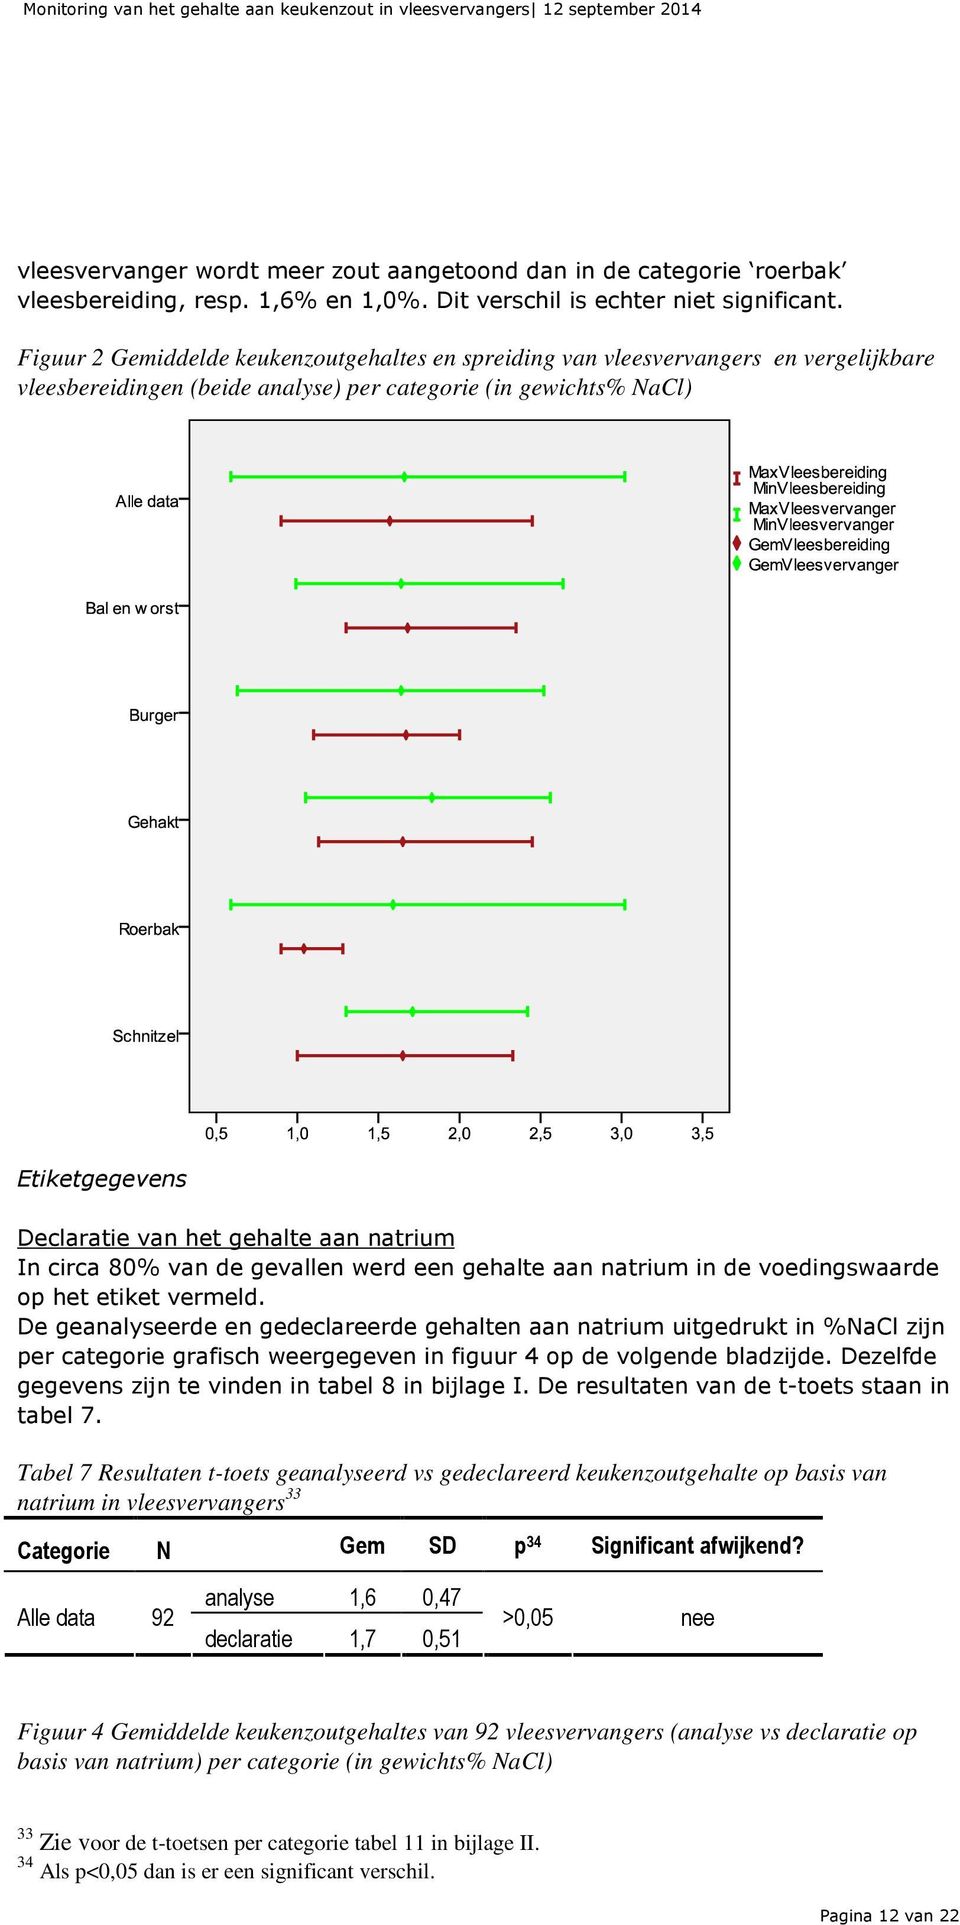 Figuur 2 Gemiddelde keukenzoutgehaltes en spreiding van vleesvervangers en vergelijkbare vleesbereidingen (beide analyse) per categorie (in gewichts% NaCl) Etiketgegevens Declaratie van het gehalte